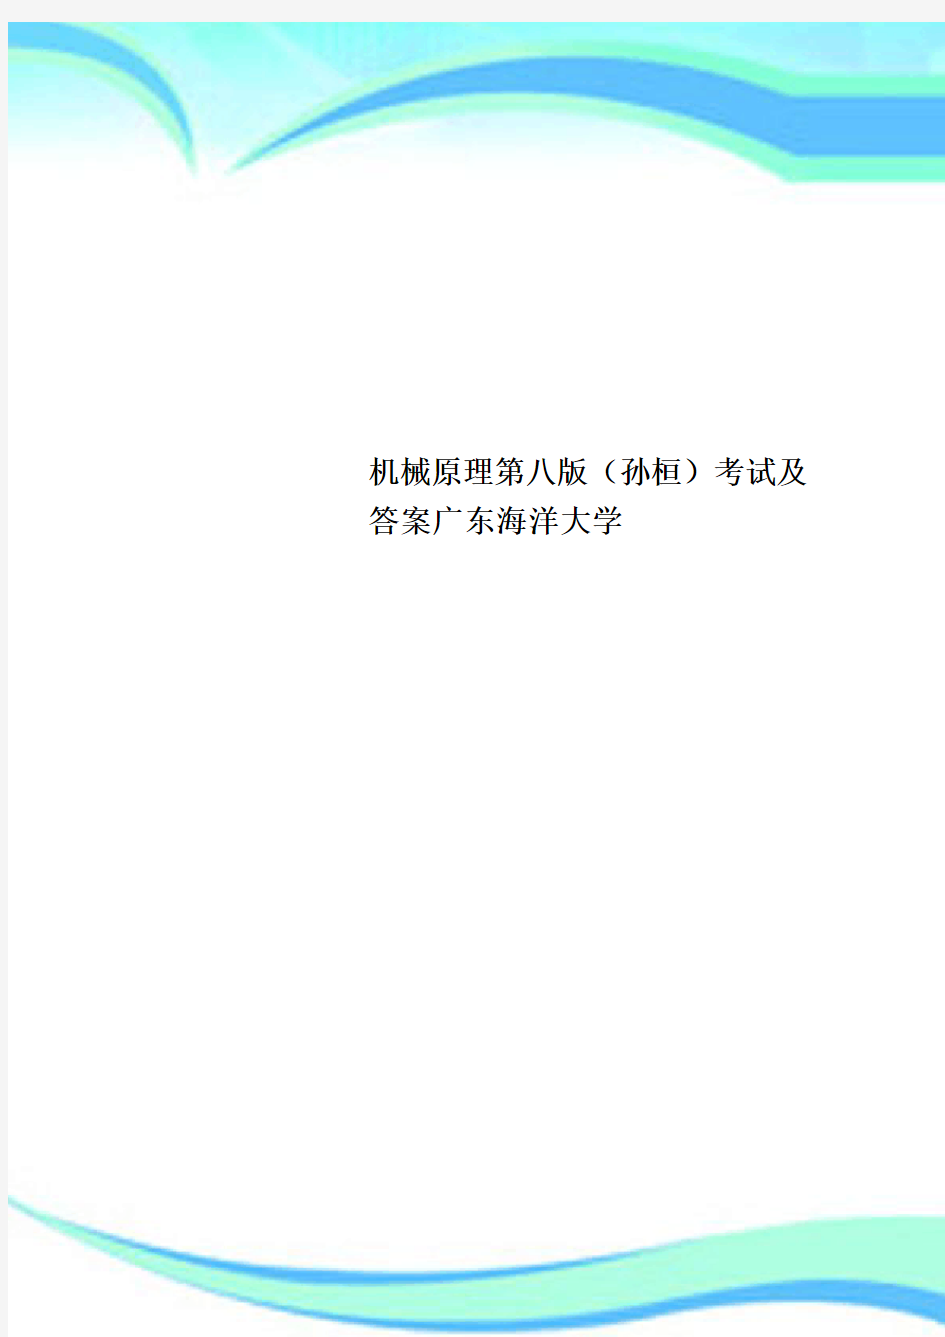 机械原理第八版(孙桓)考试及答案广东海洋大学